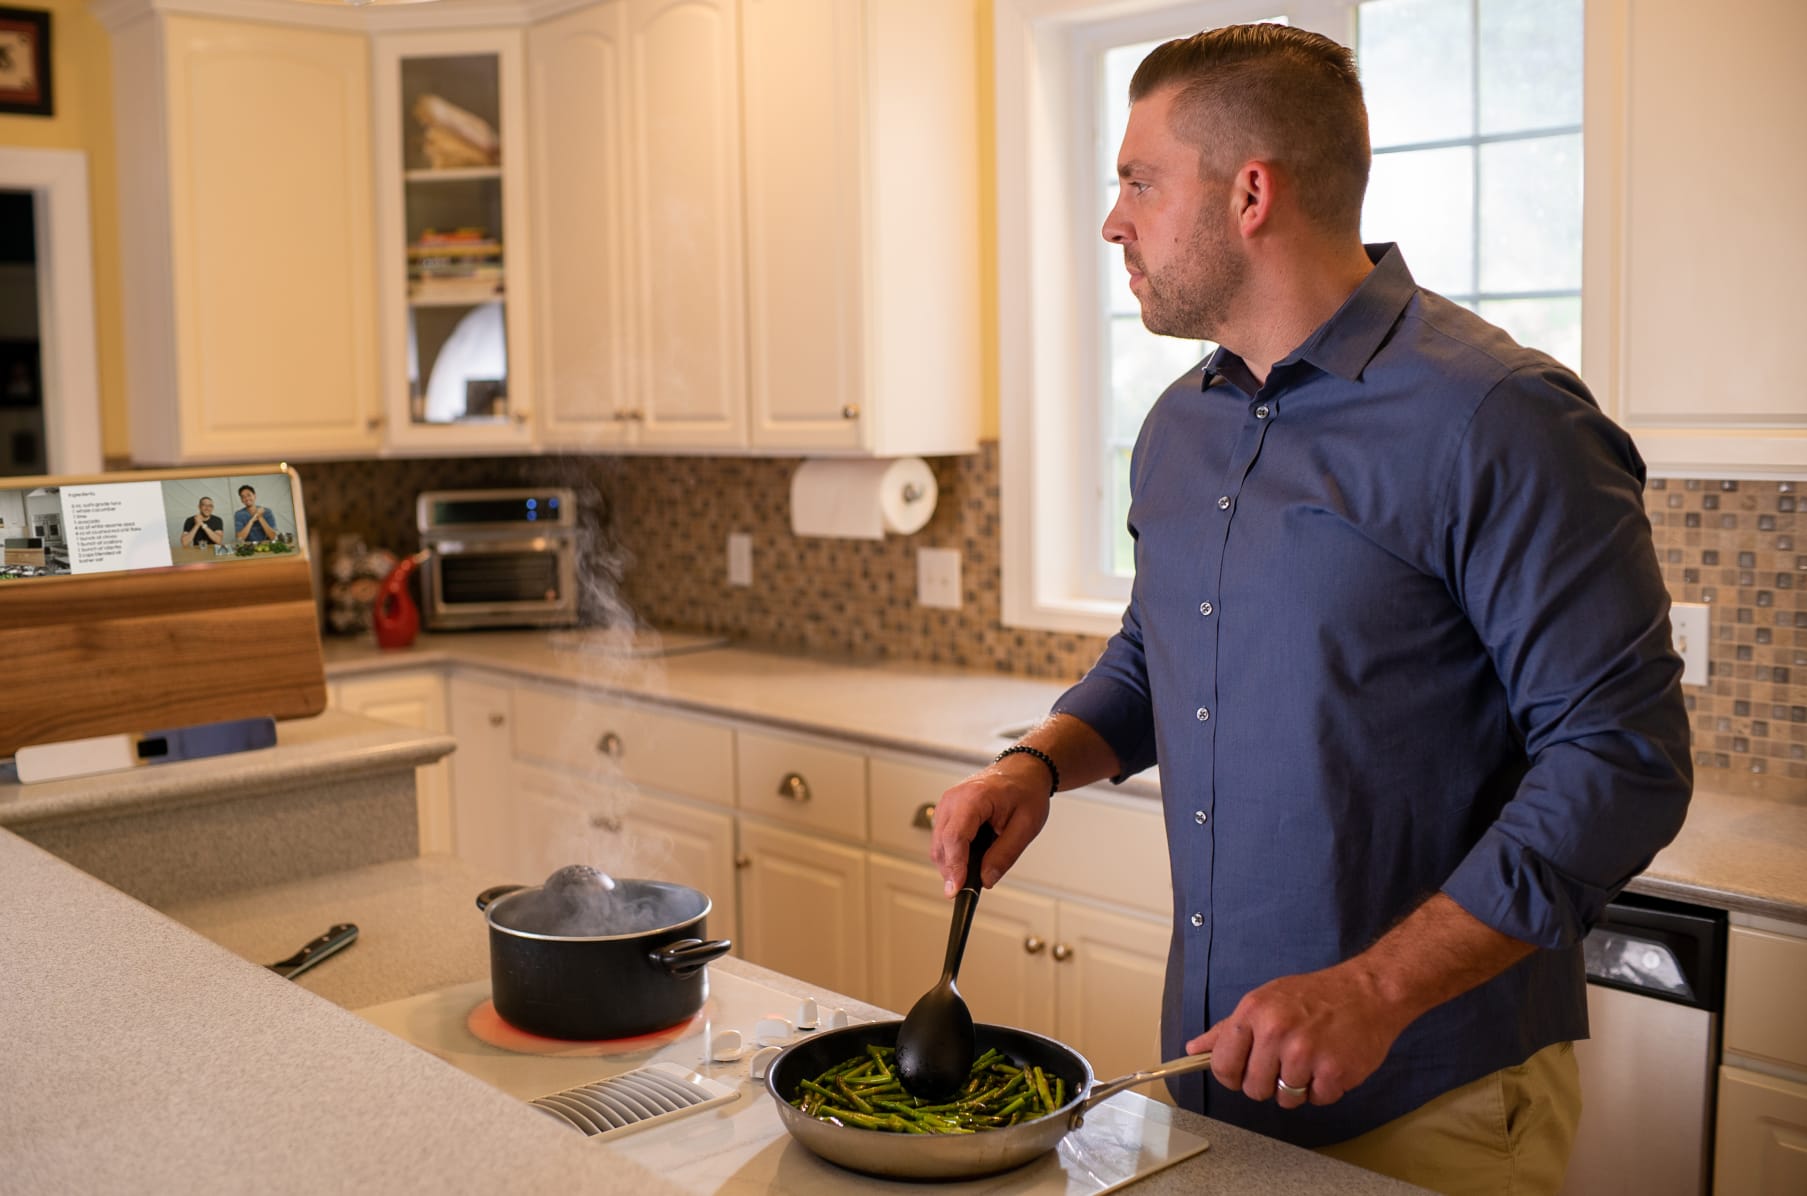 BLOK: Smart Cutting Board & Virtual Cooking Classes 🧑🍳 by The BLOK Team —  Kickstarter